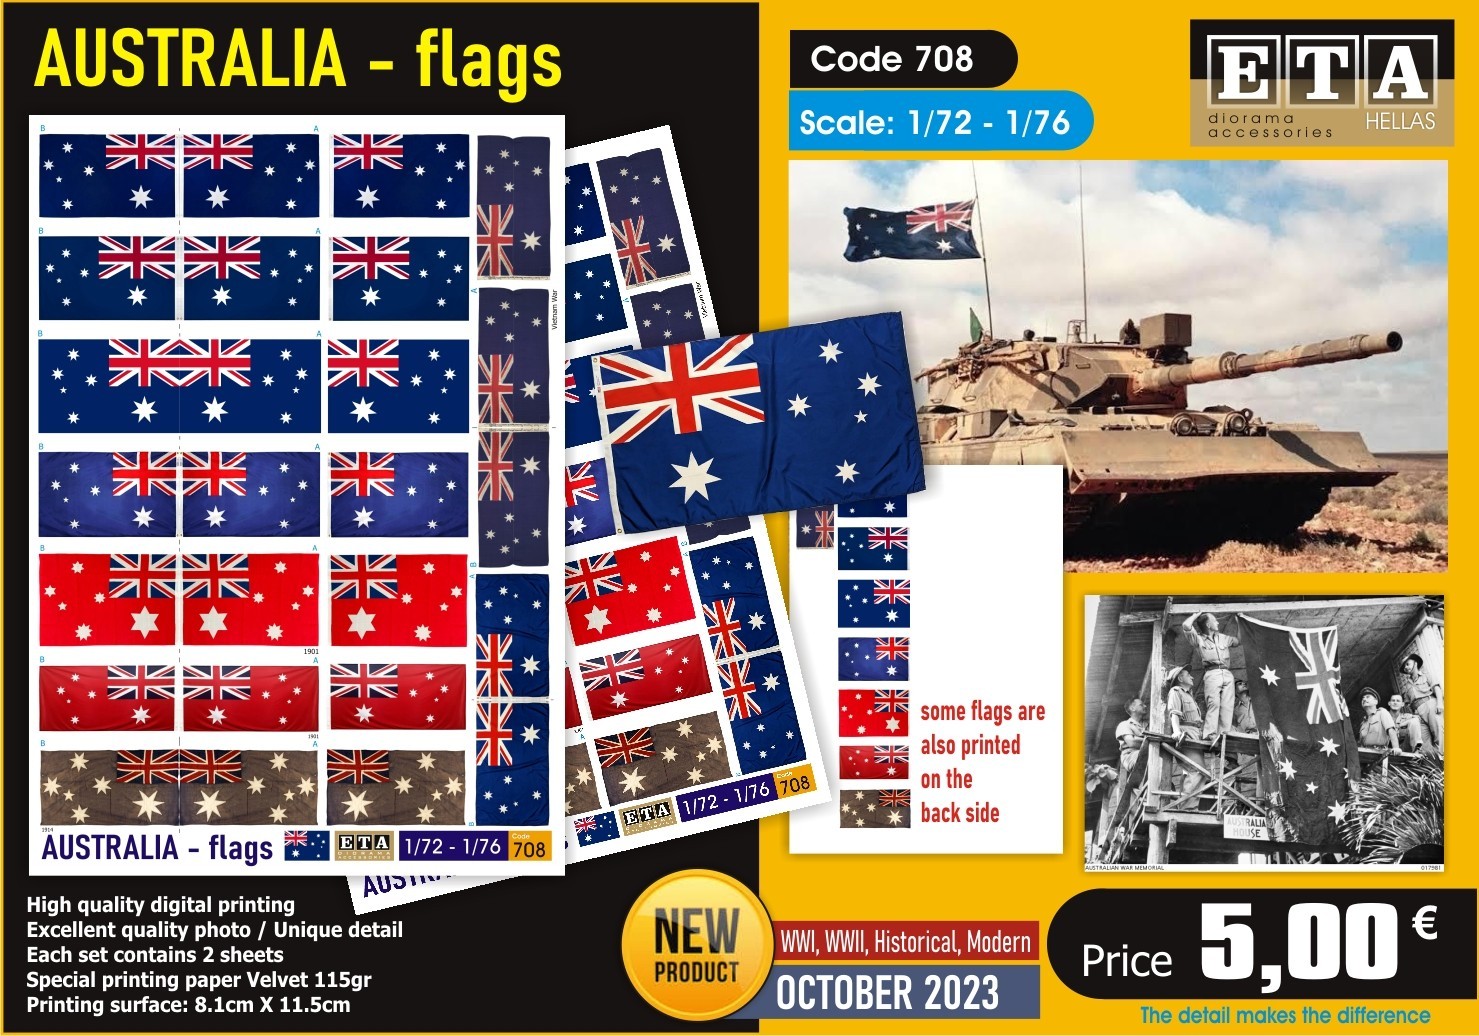 ETA Diorama Announces October Australia Flags 1/72, 1/76